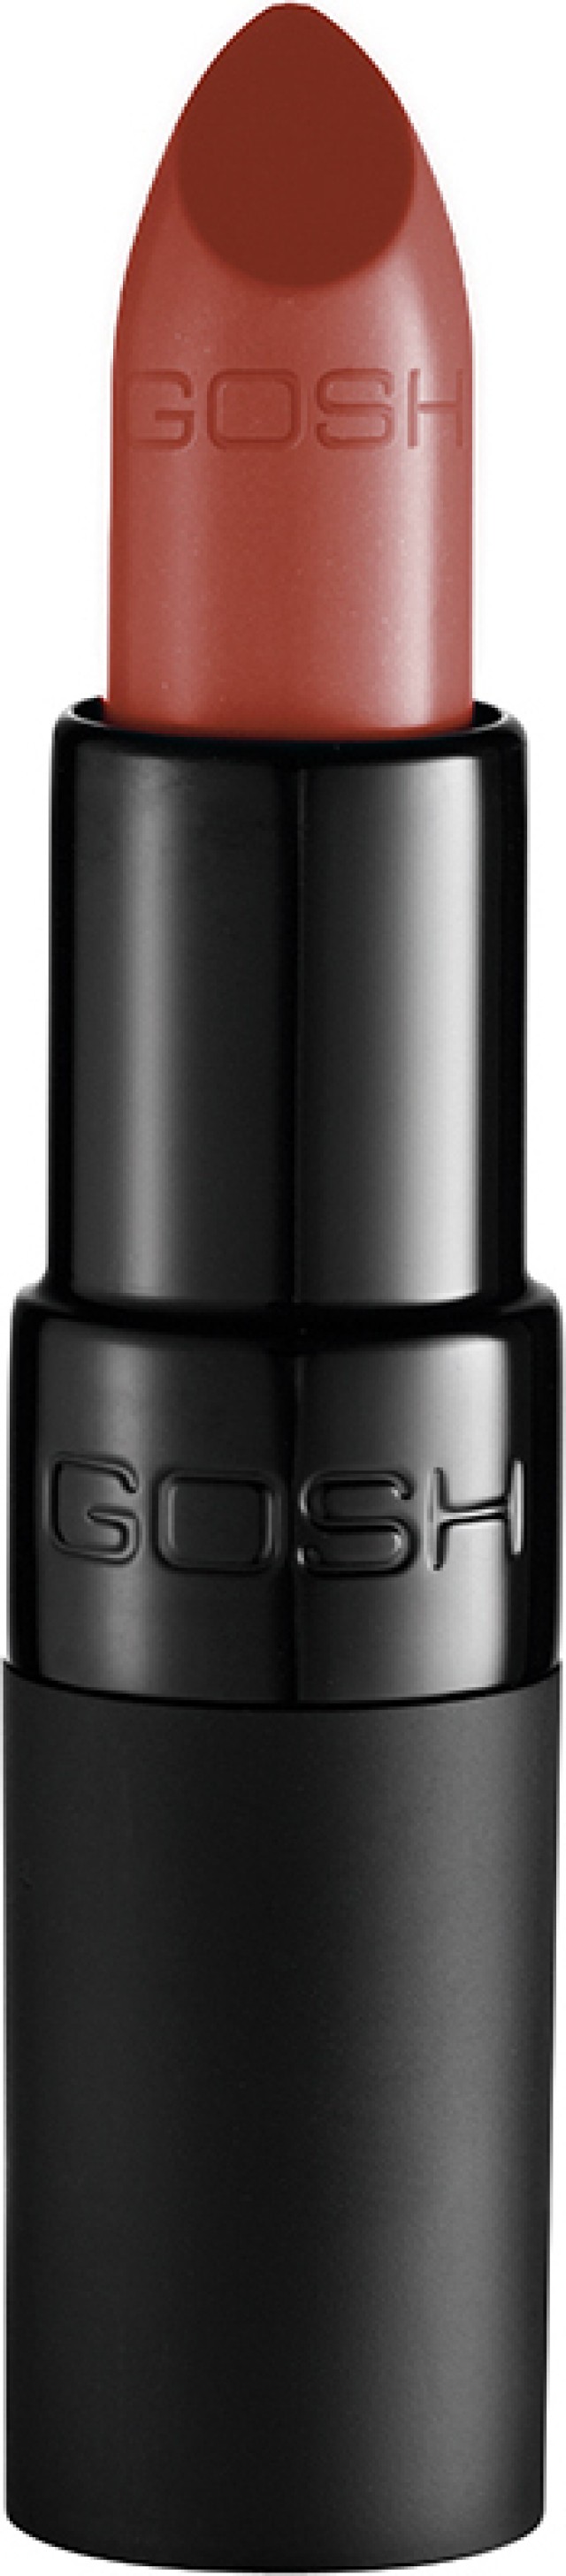 Gosh Velvet Touch Lipstick 122 Nougat 4gr